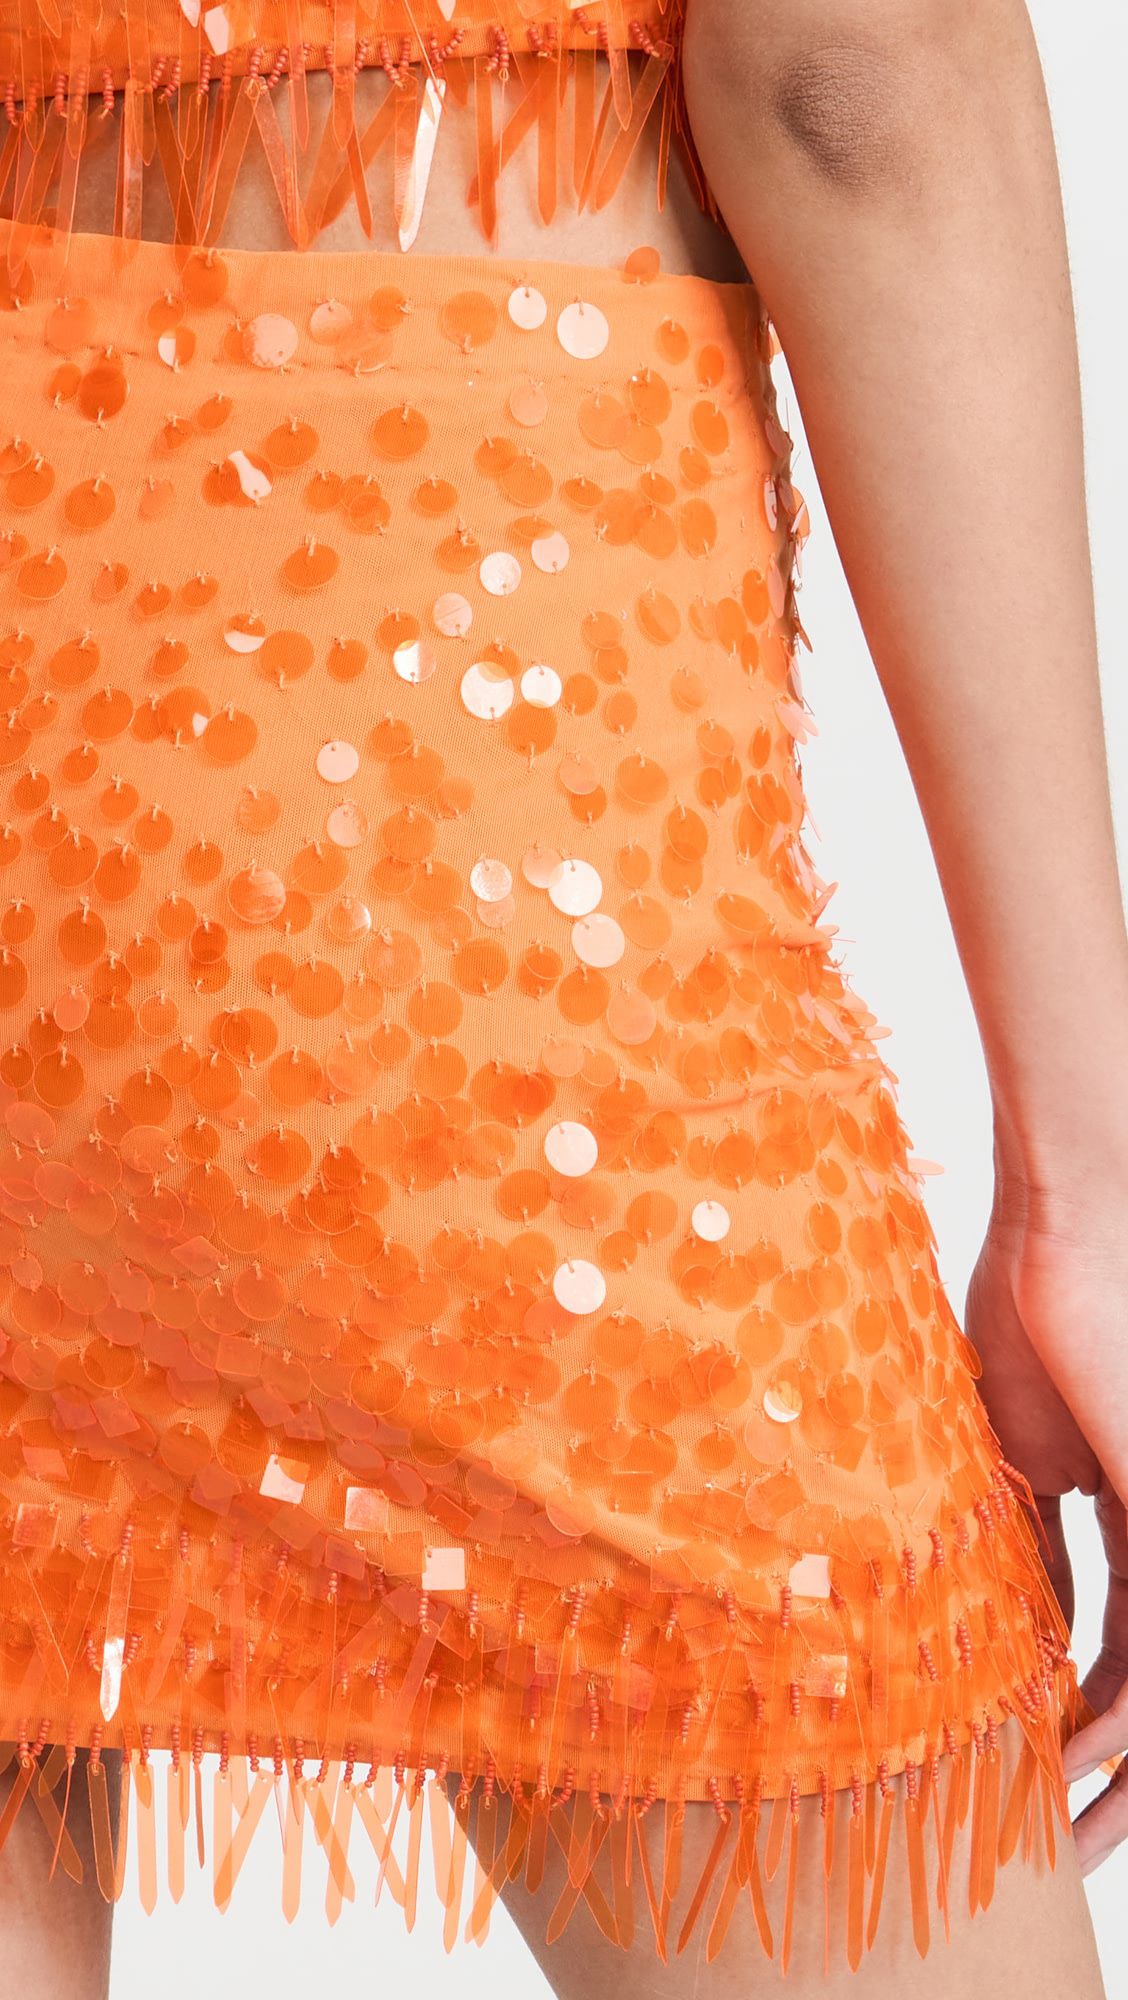 Factory supplier orange sequined tassels elegant mini skirt